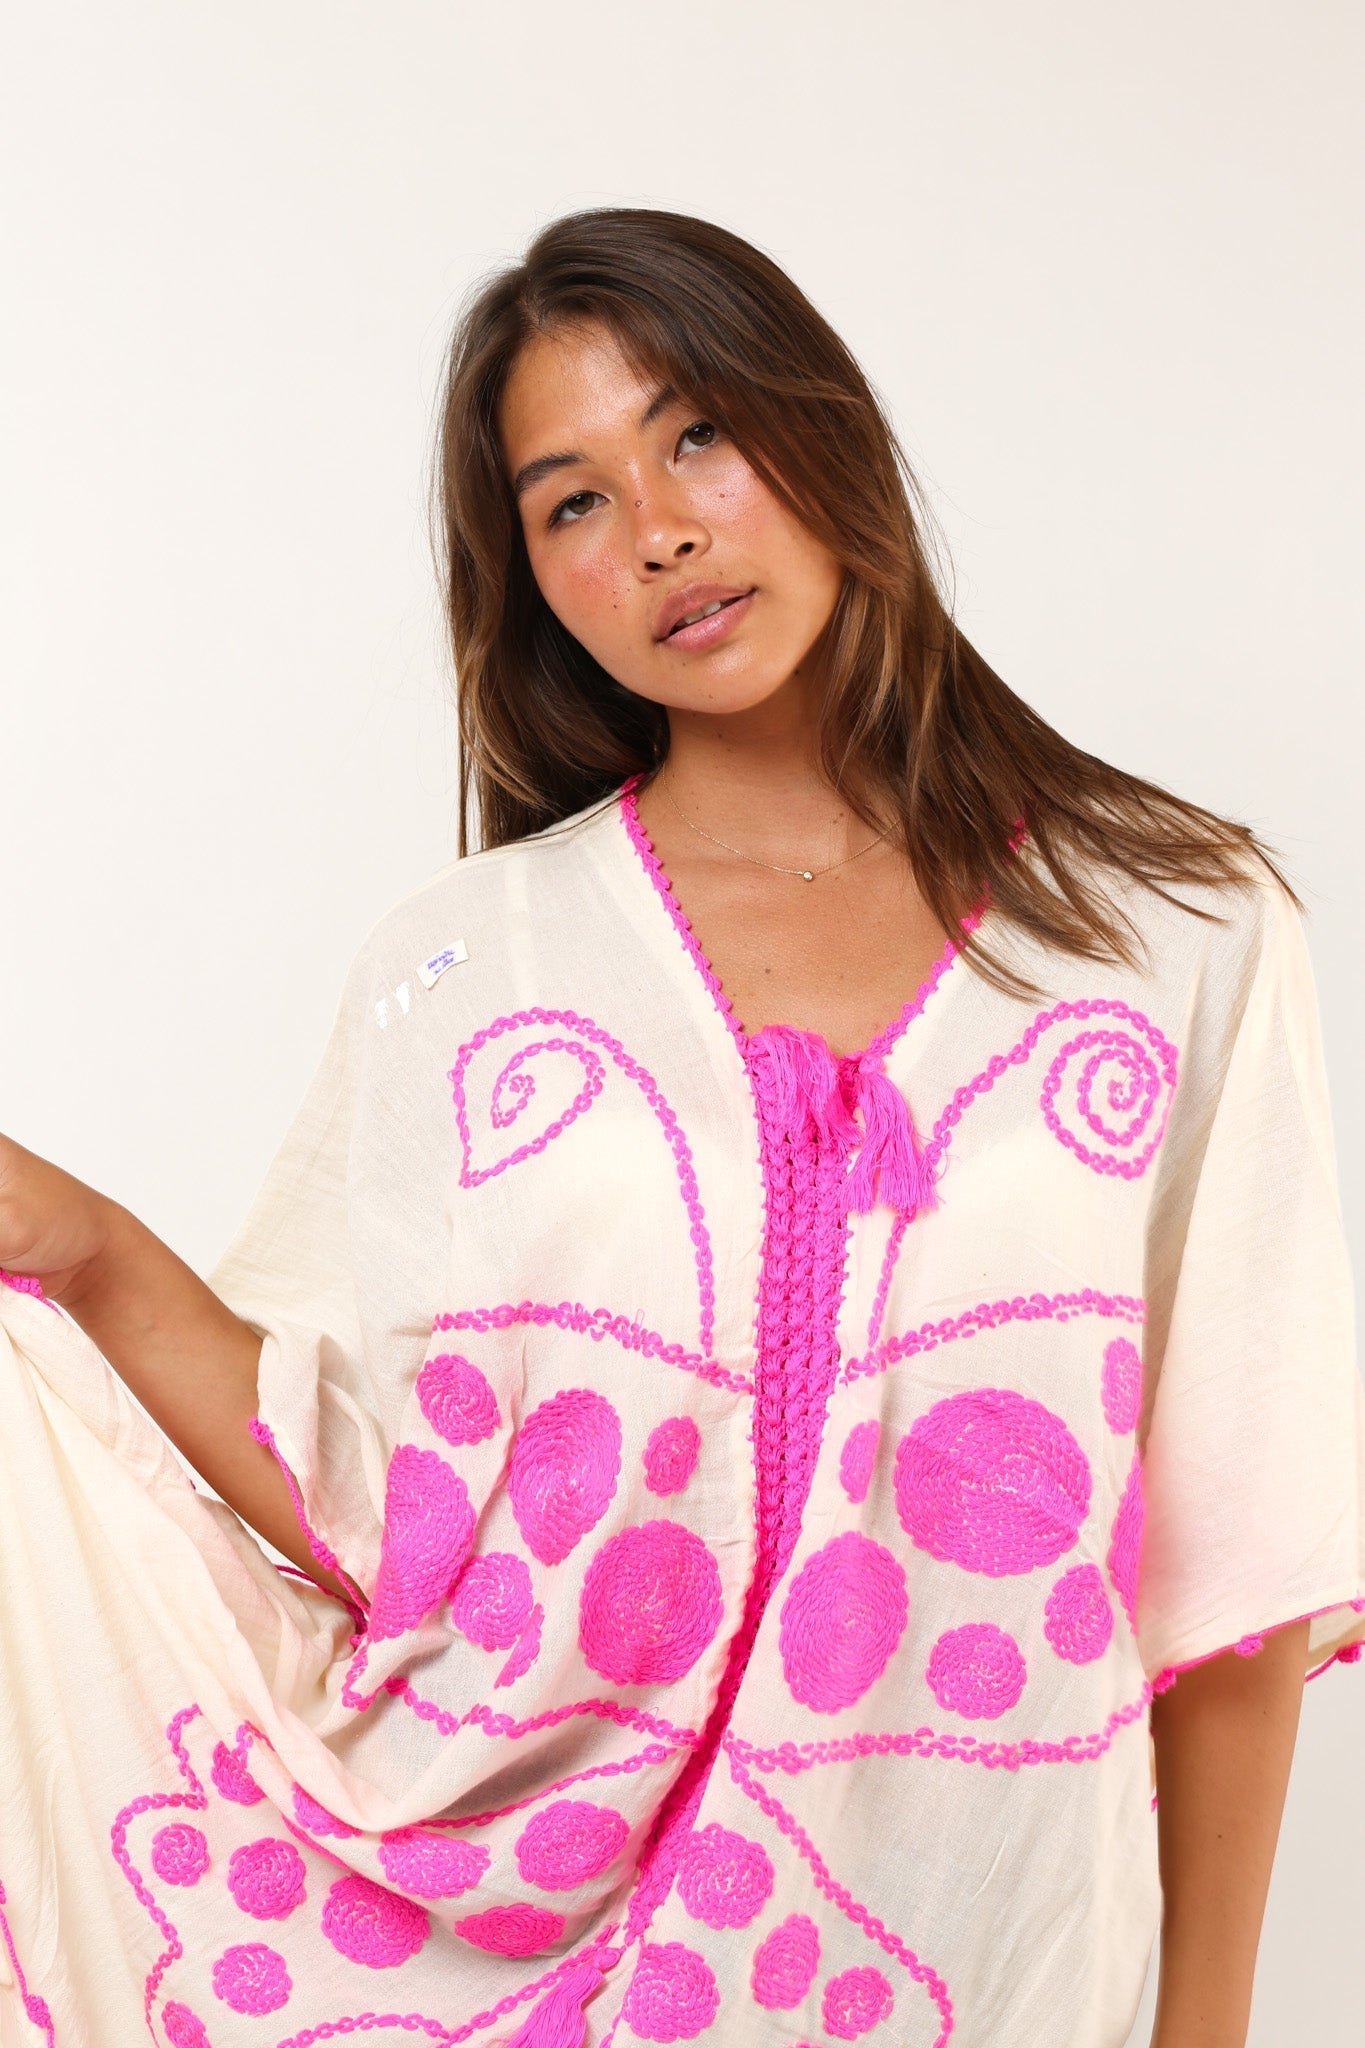 EMBROIDERED KAFTAN DRESS SANELA - sustainably made MOMO NEW YORK sustainable clothing, kaftan slow fashion